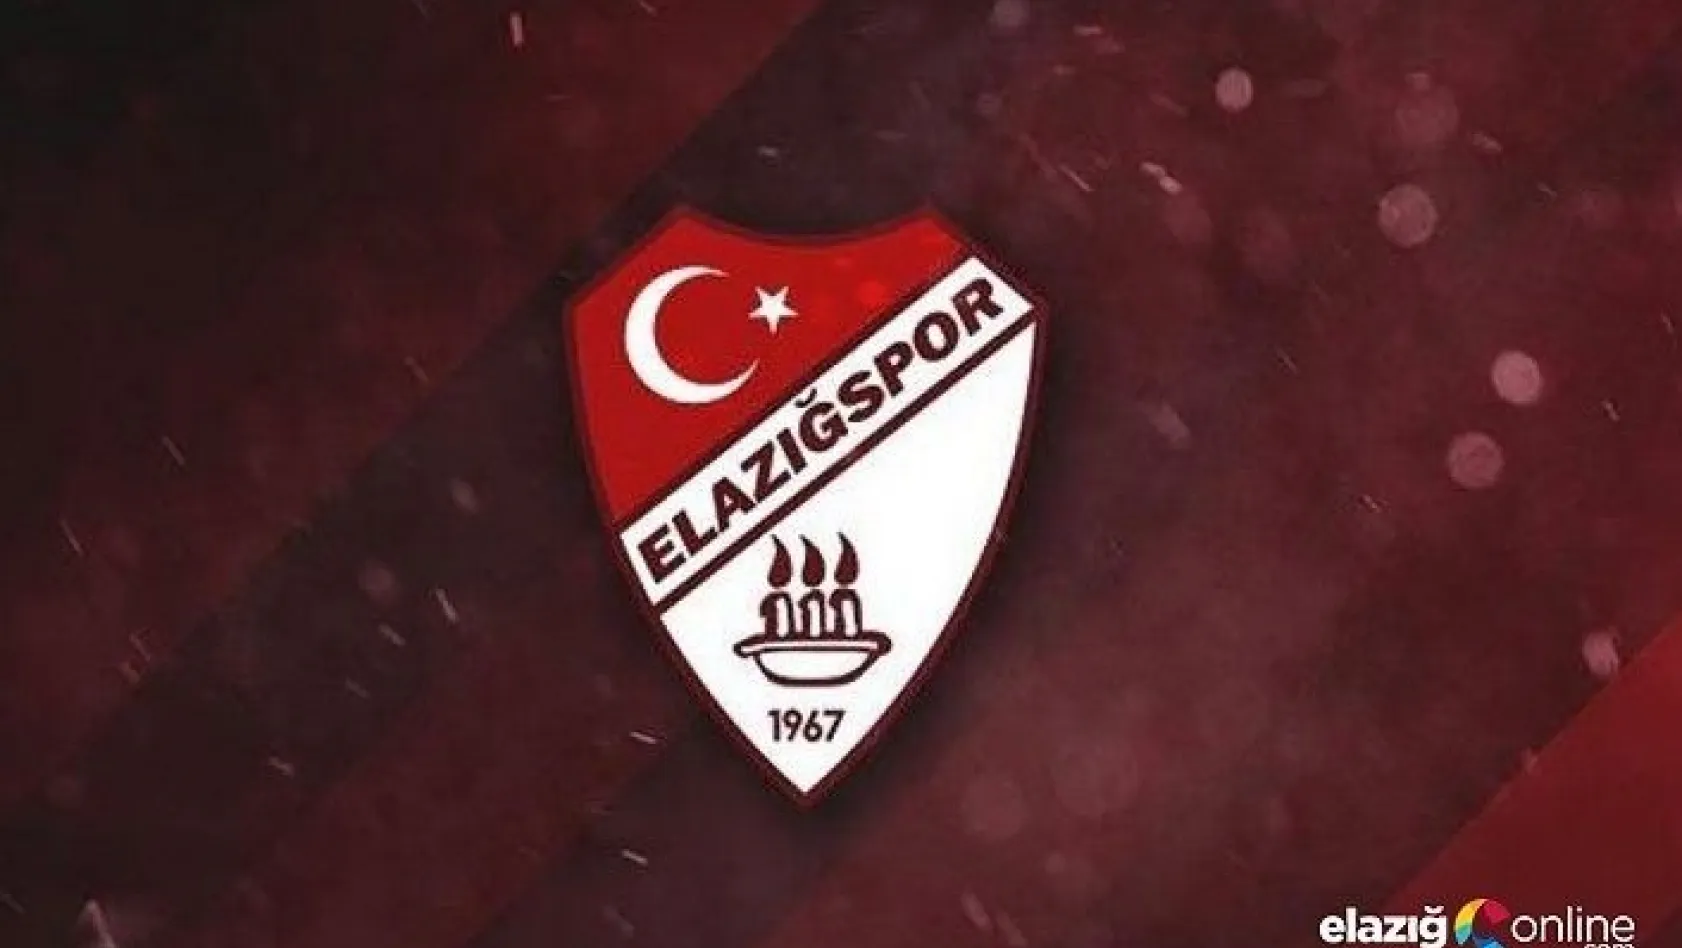 Elazığspor Kulübü Geçmiş Olsun Dileklerini İletti